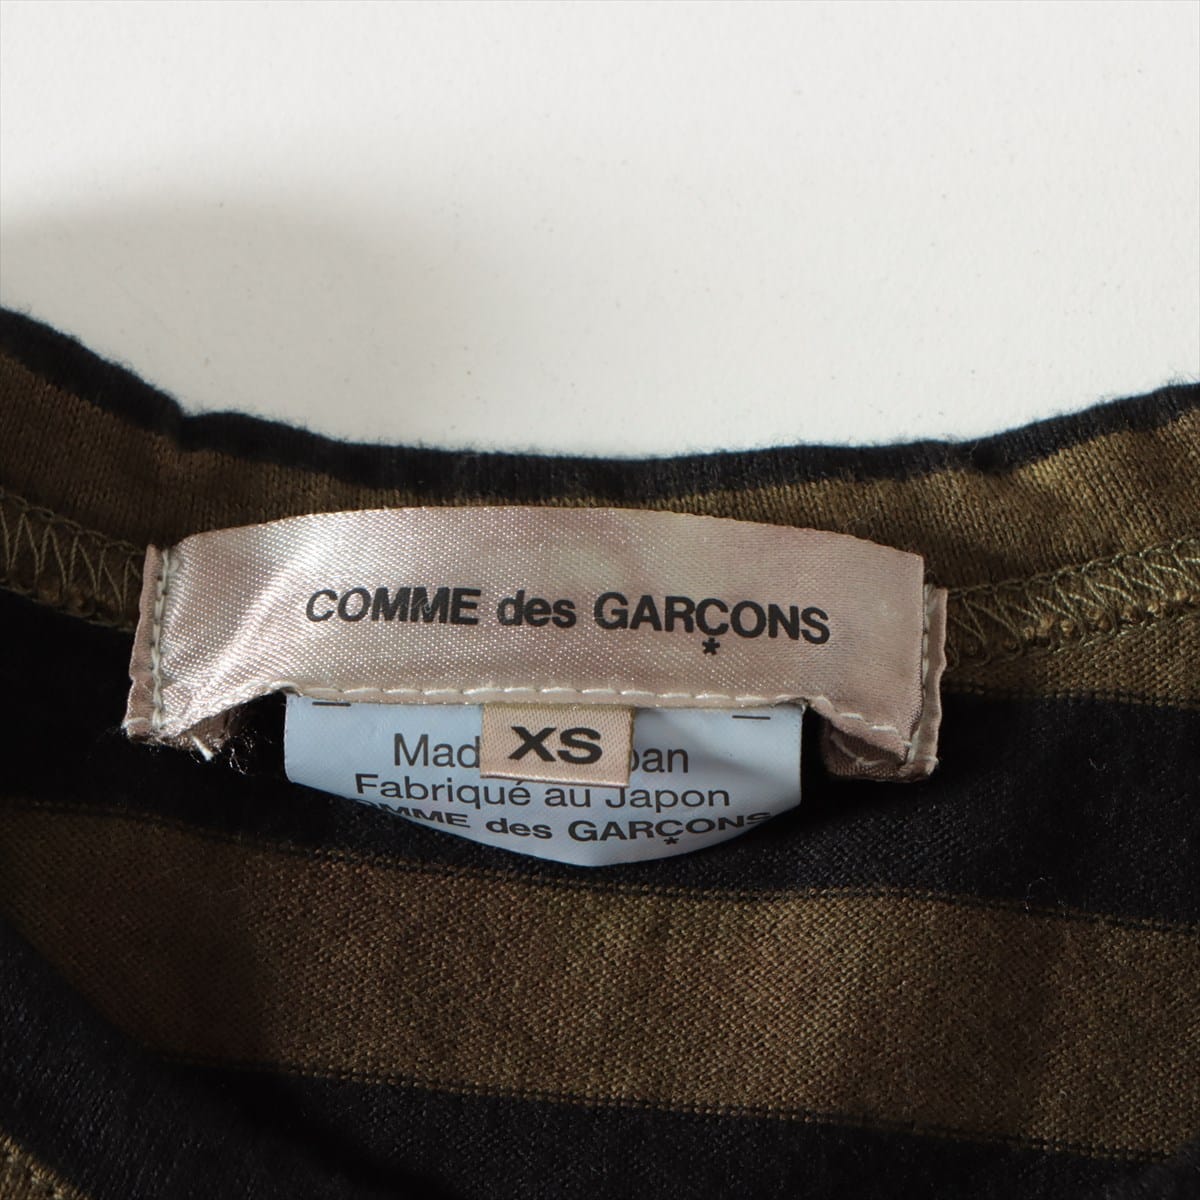 Comme des Garçons AD2016 Cotton Long T shirts XS Ladies' Black x khaki  GS-T101